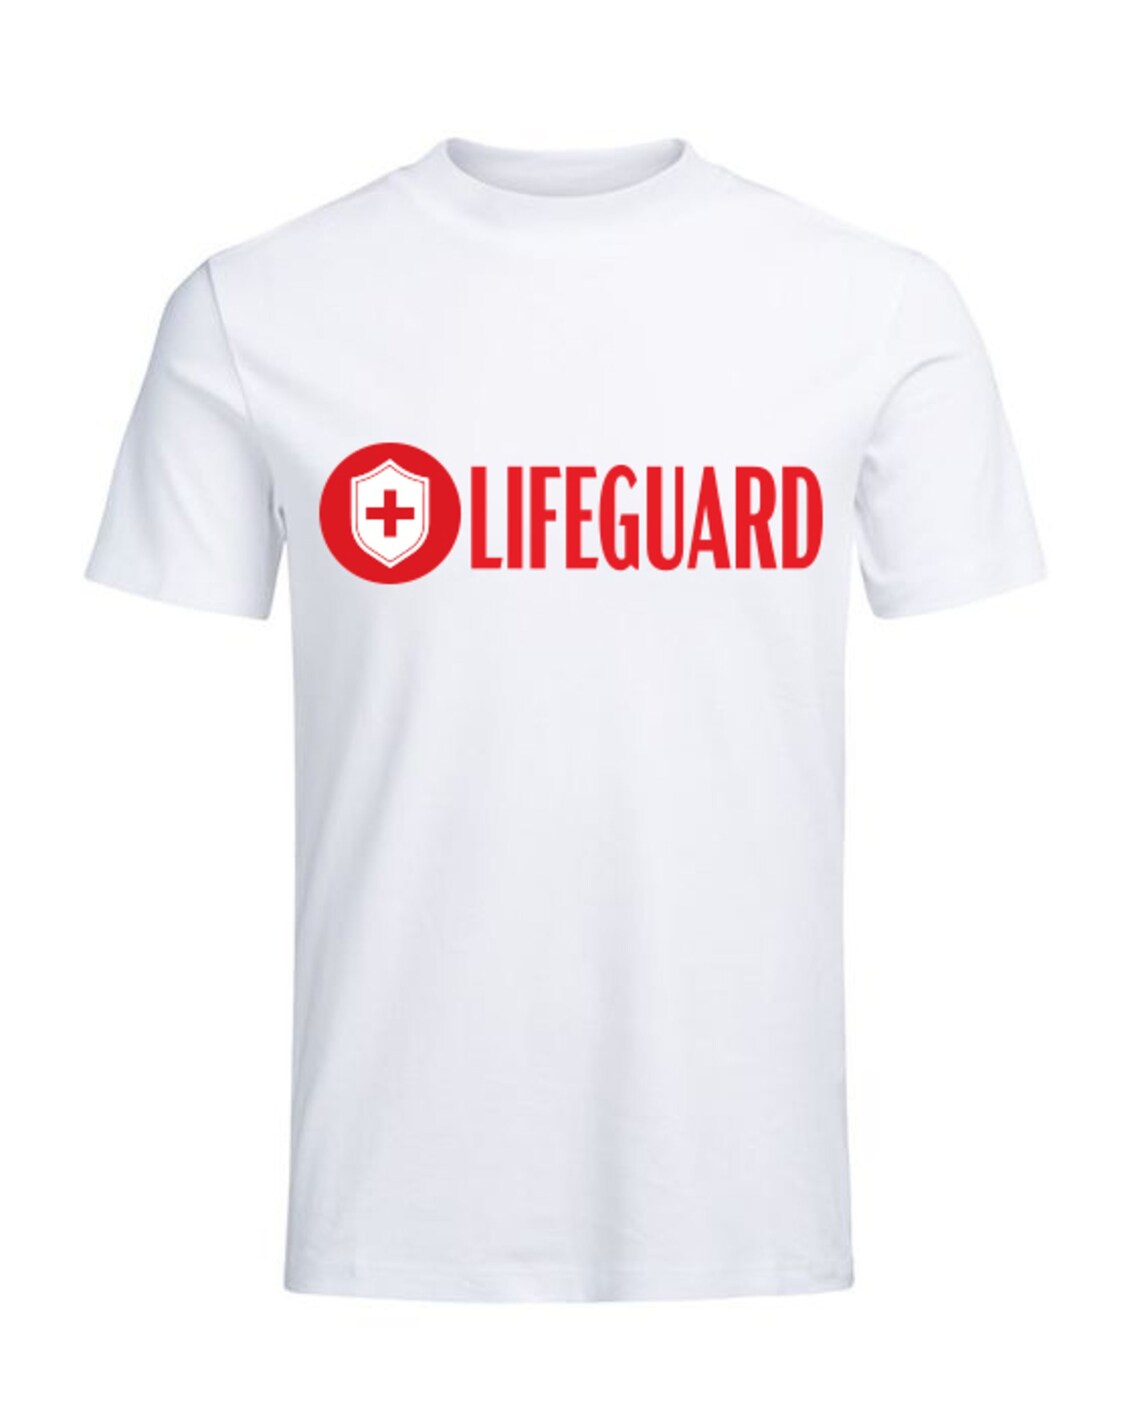 Lifeguard Birthday SVG Lifeguard SVG Files Lifeguard Cut | Etsy